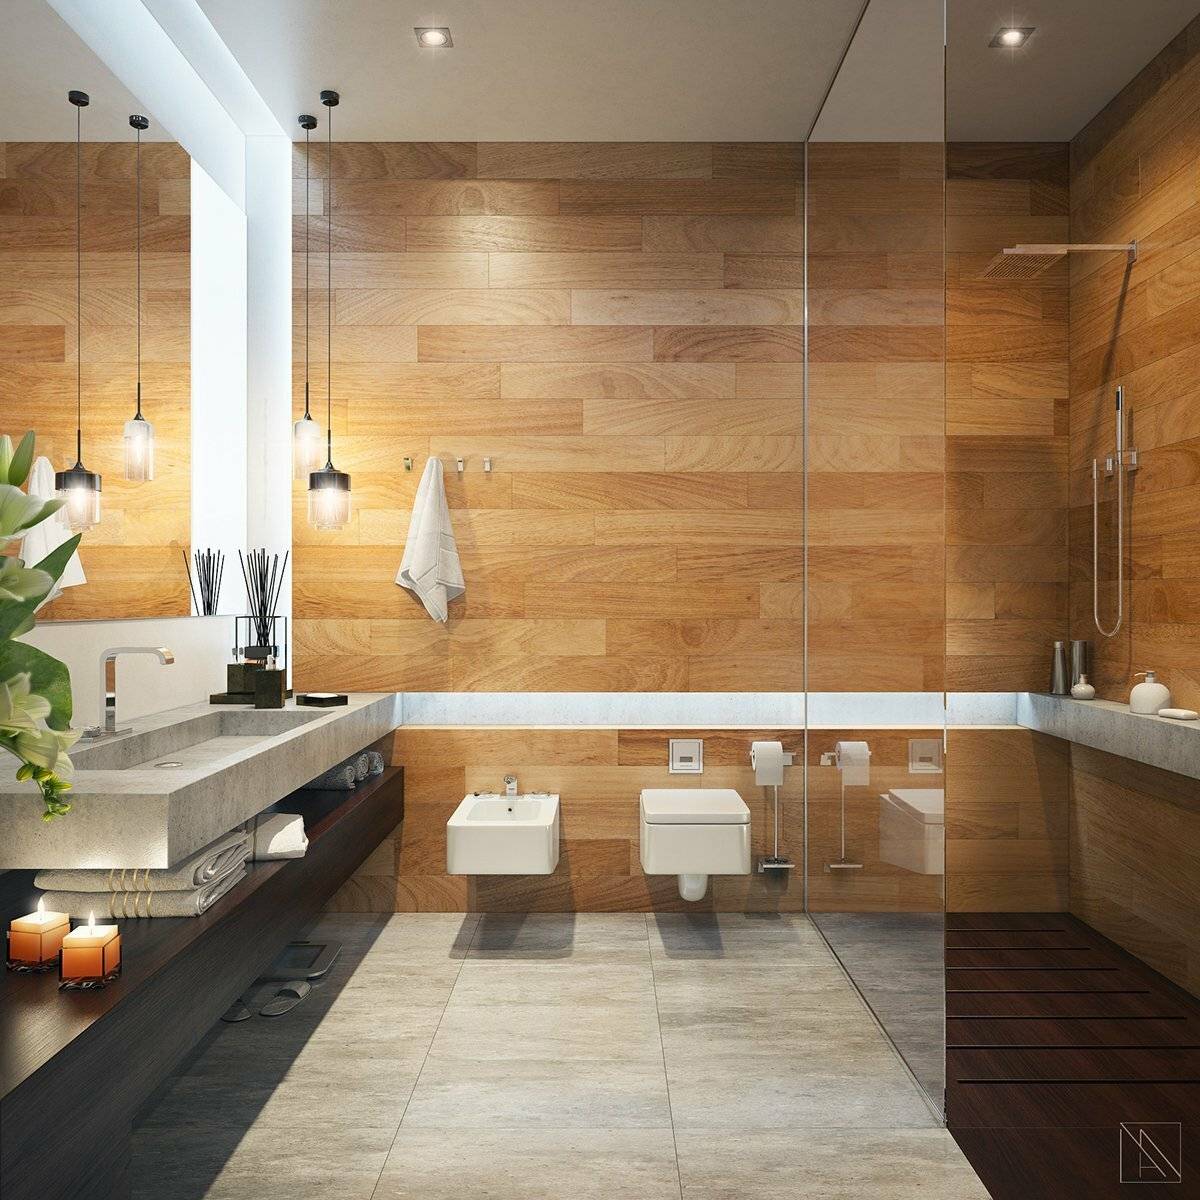 Ванная комната дизайн плиткой дерево. Деревянная плитка в ванной. Плитка под дерево в ванной комнате. Сочетание мрамора и дерева. Ванная комната мрамор и дерево.